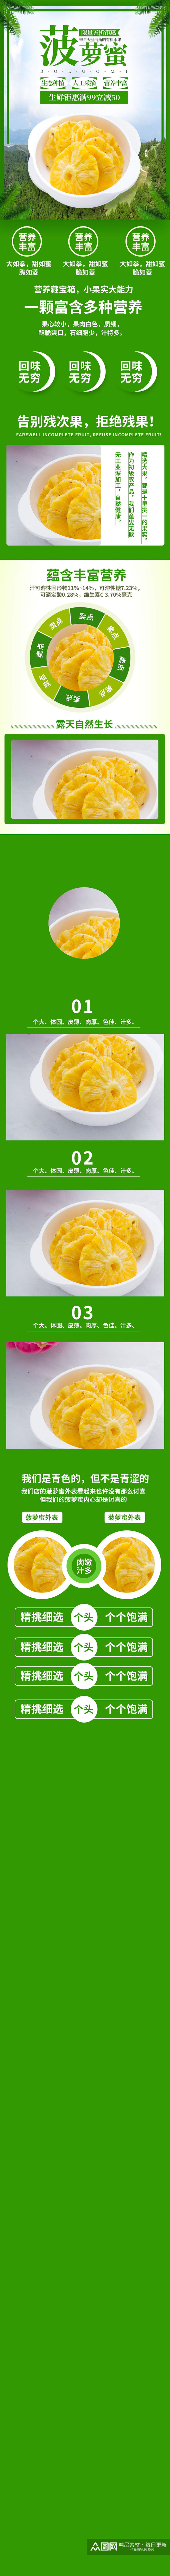 蔬菜水果菠萝蜜芒果哈密瓜详情页素材